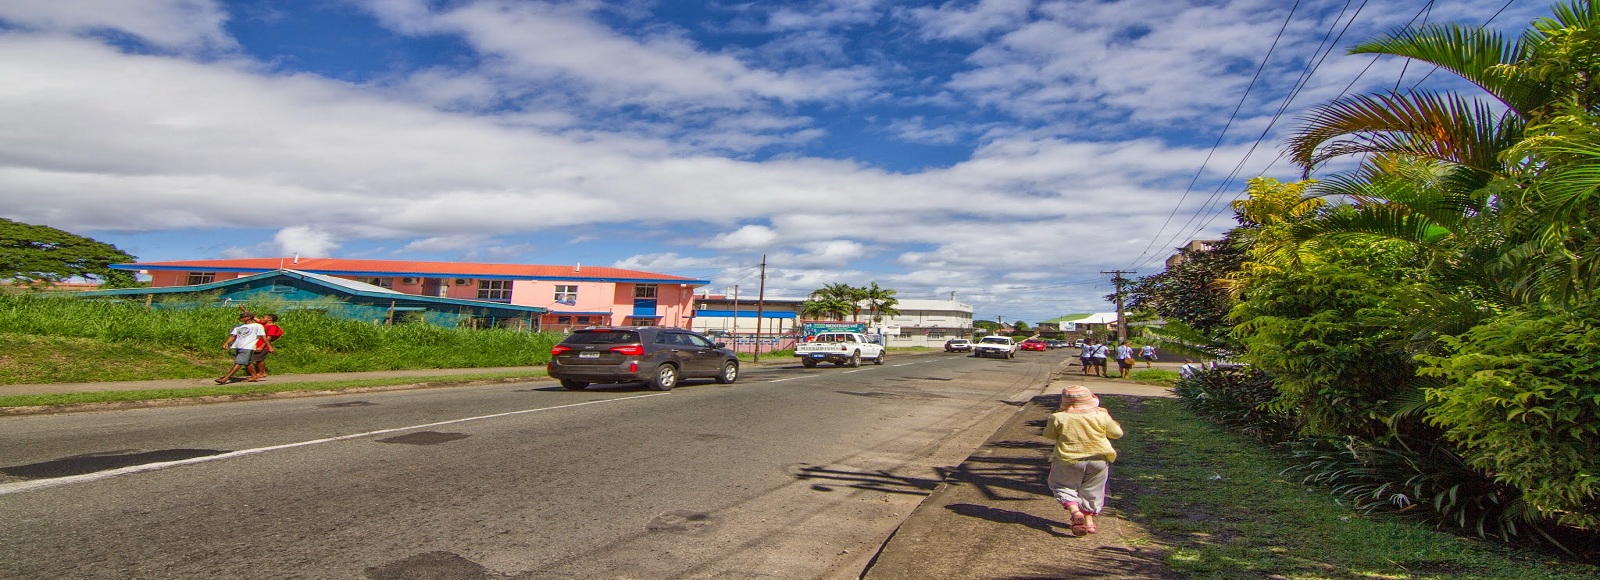 Ofertas de Traslados en Suva. Traslados económicos en Suva 